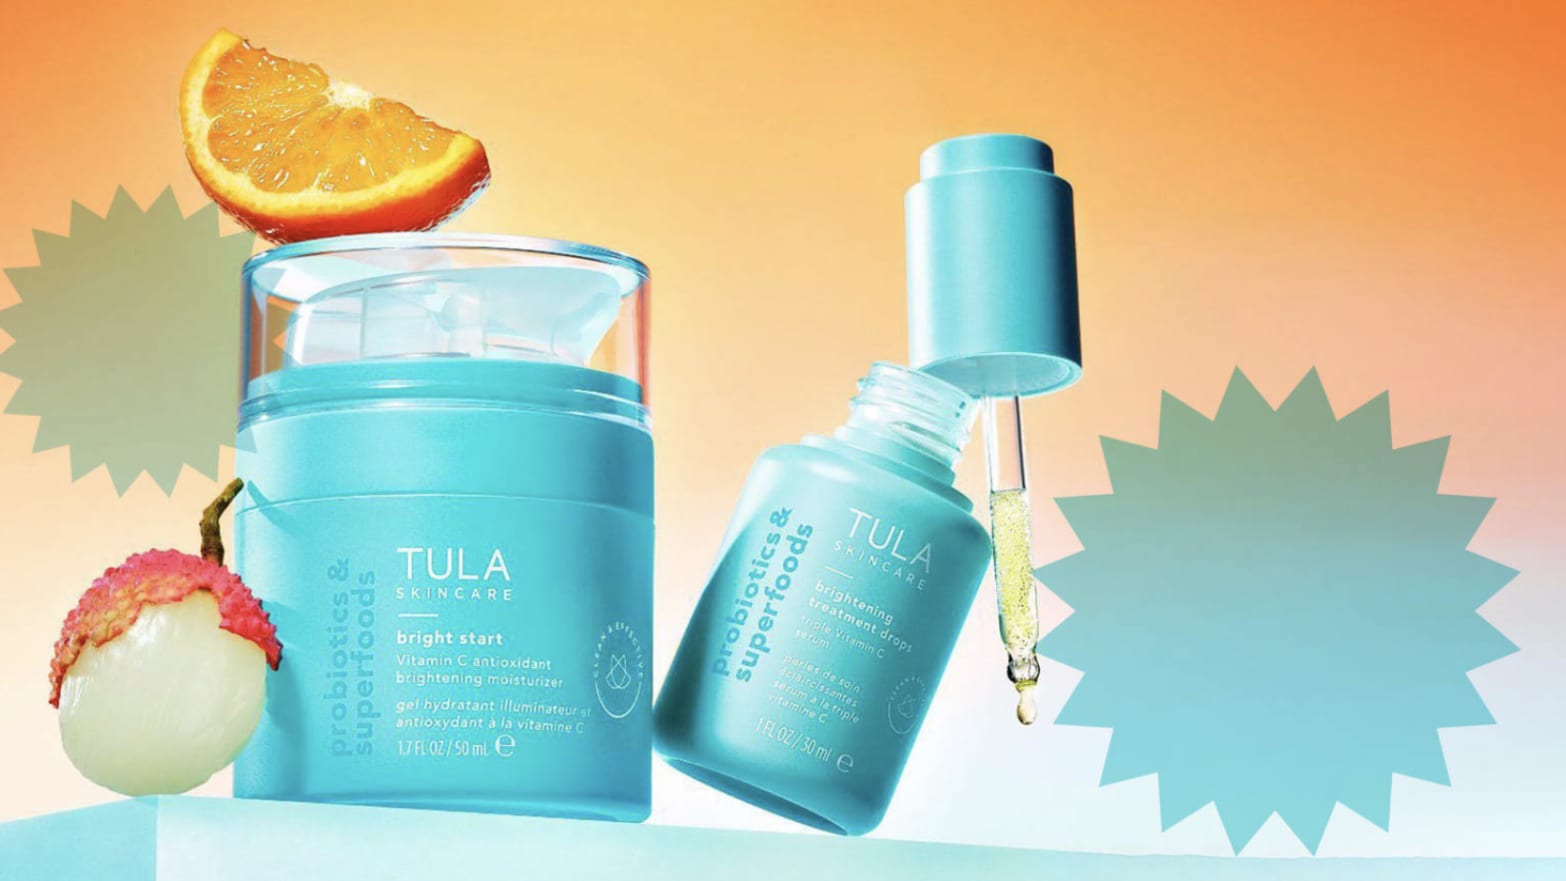 Tula vitamin C brightening kit